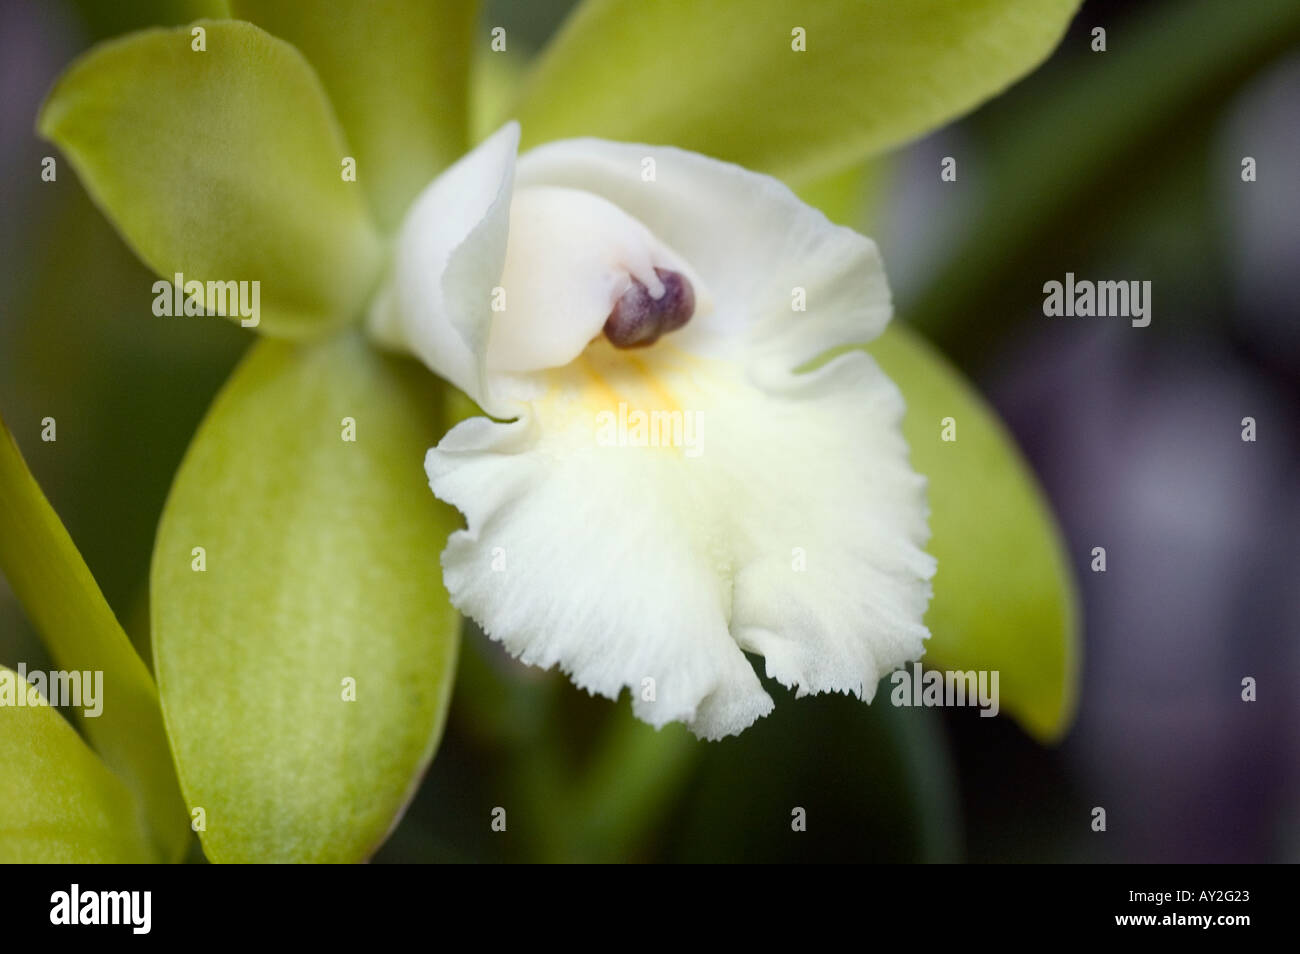 Una giungla orchid con centro bianco e petali di colore verde Foto Stock